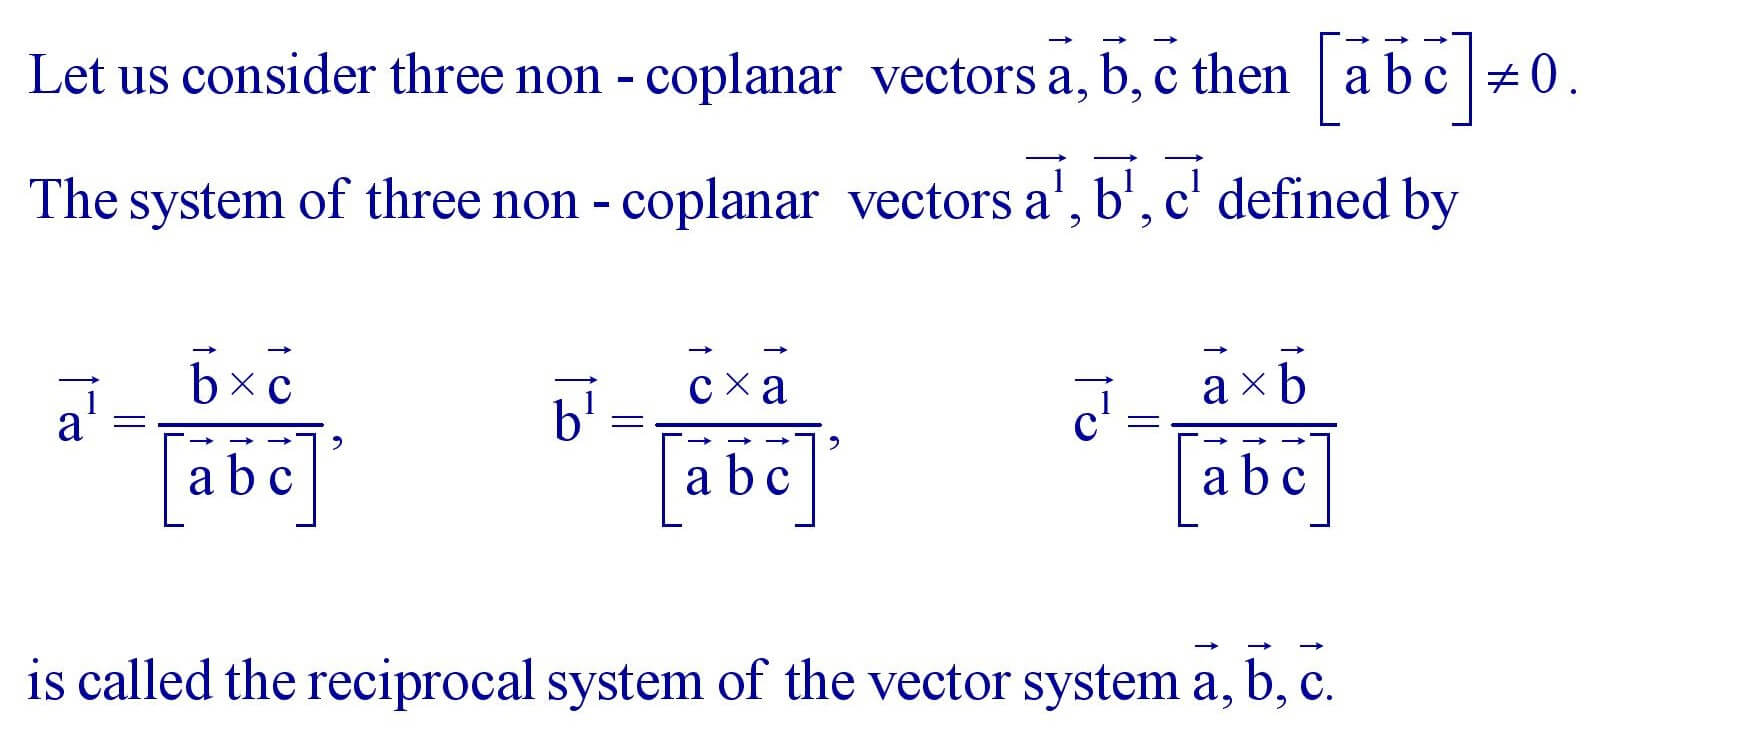 Reciprocal system of vectors